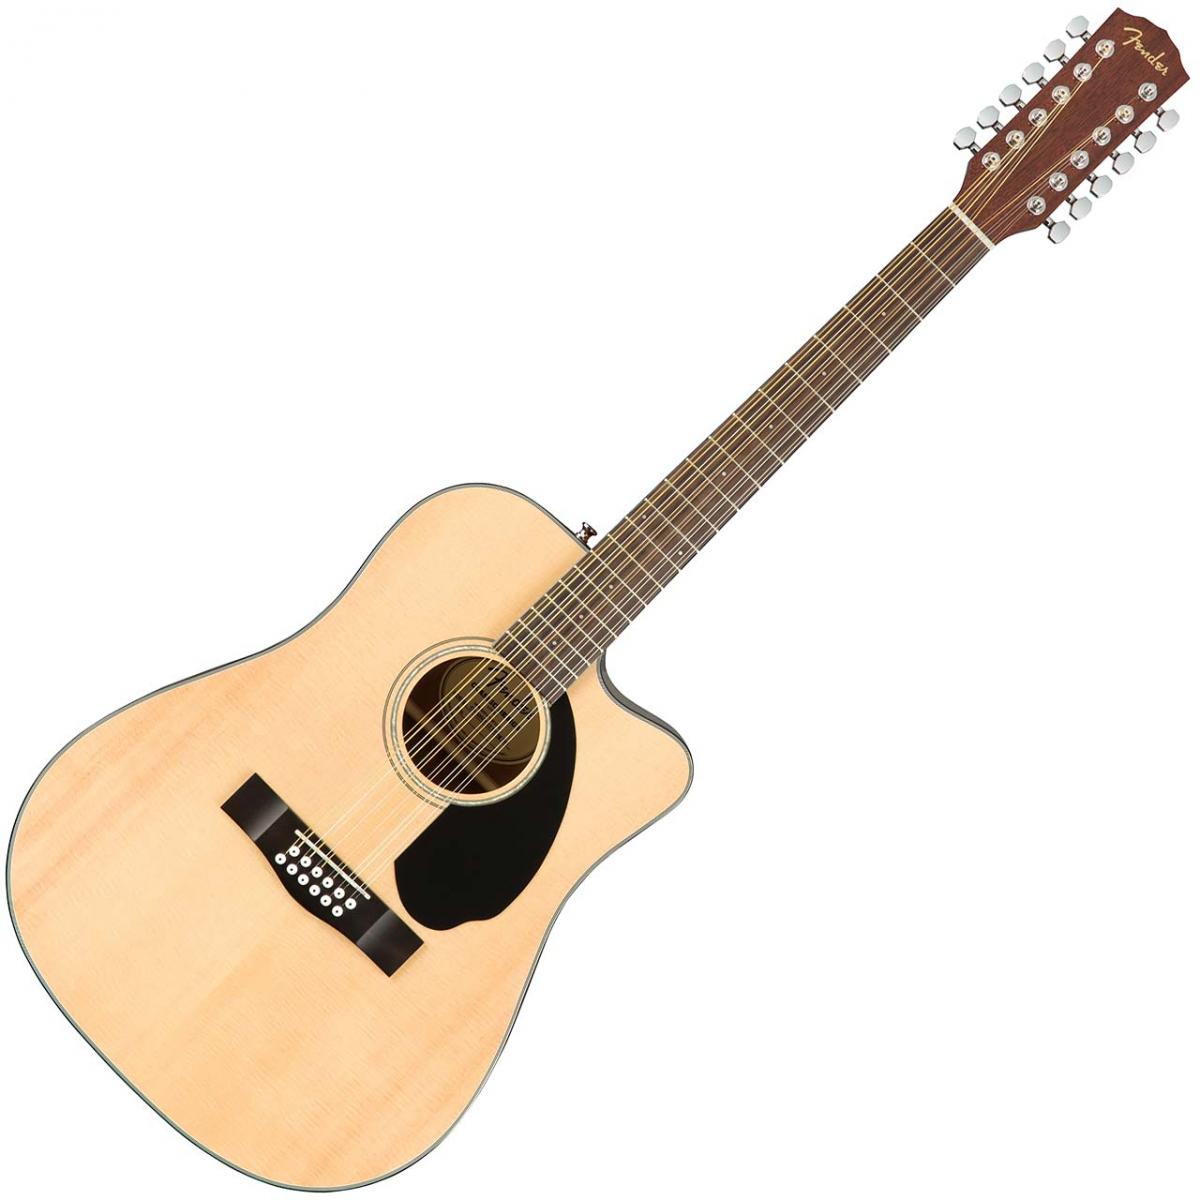 Fender アコースティックギター フェンダー CD-60 - ギター